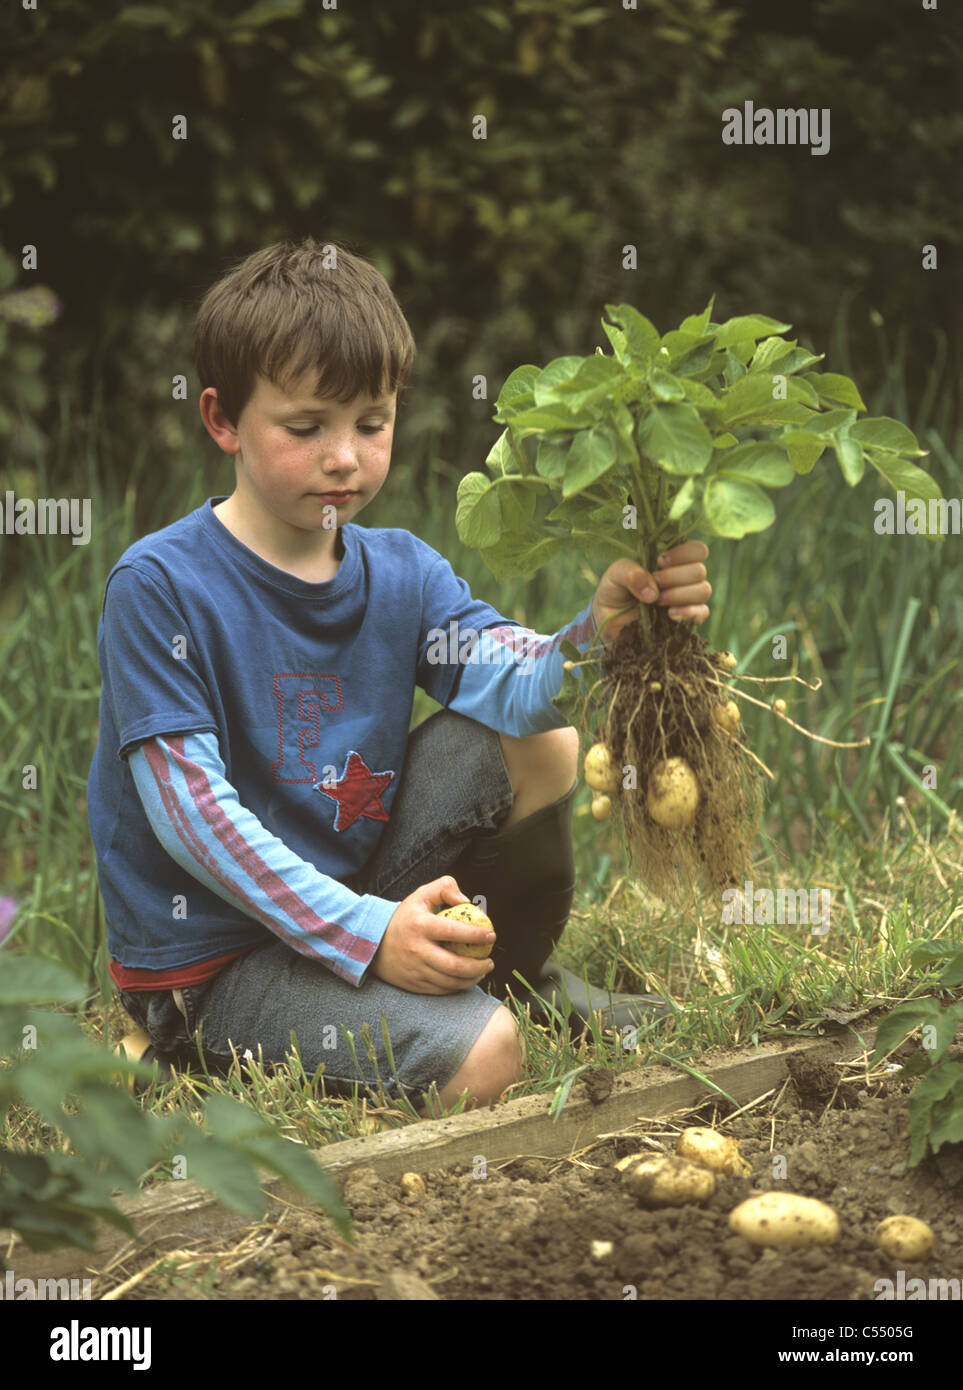 Ragazzo in giardino o riparto solleva un raccolto di 'luogo' prima le patate primaticce Foto Stock